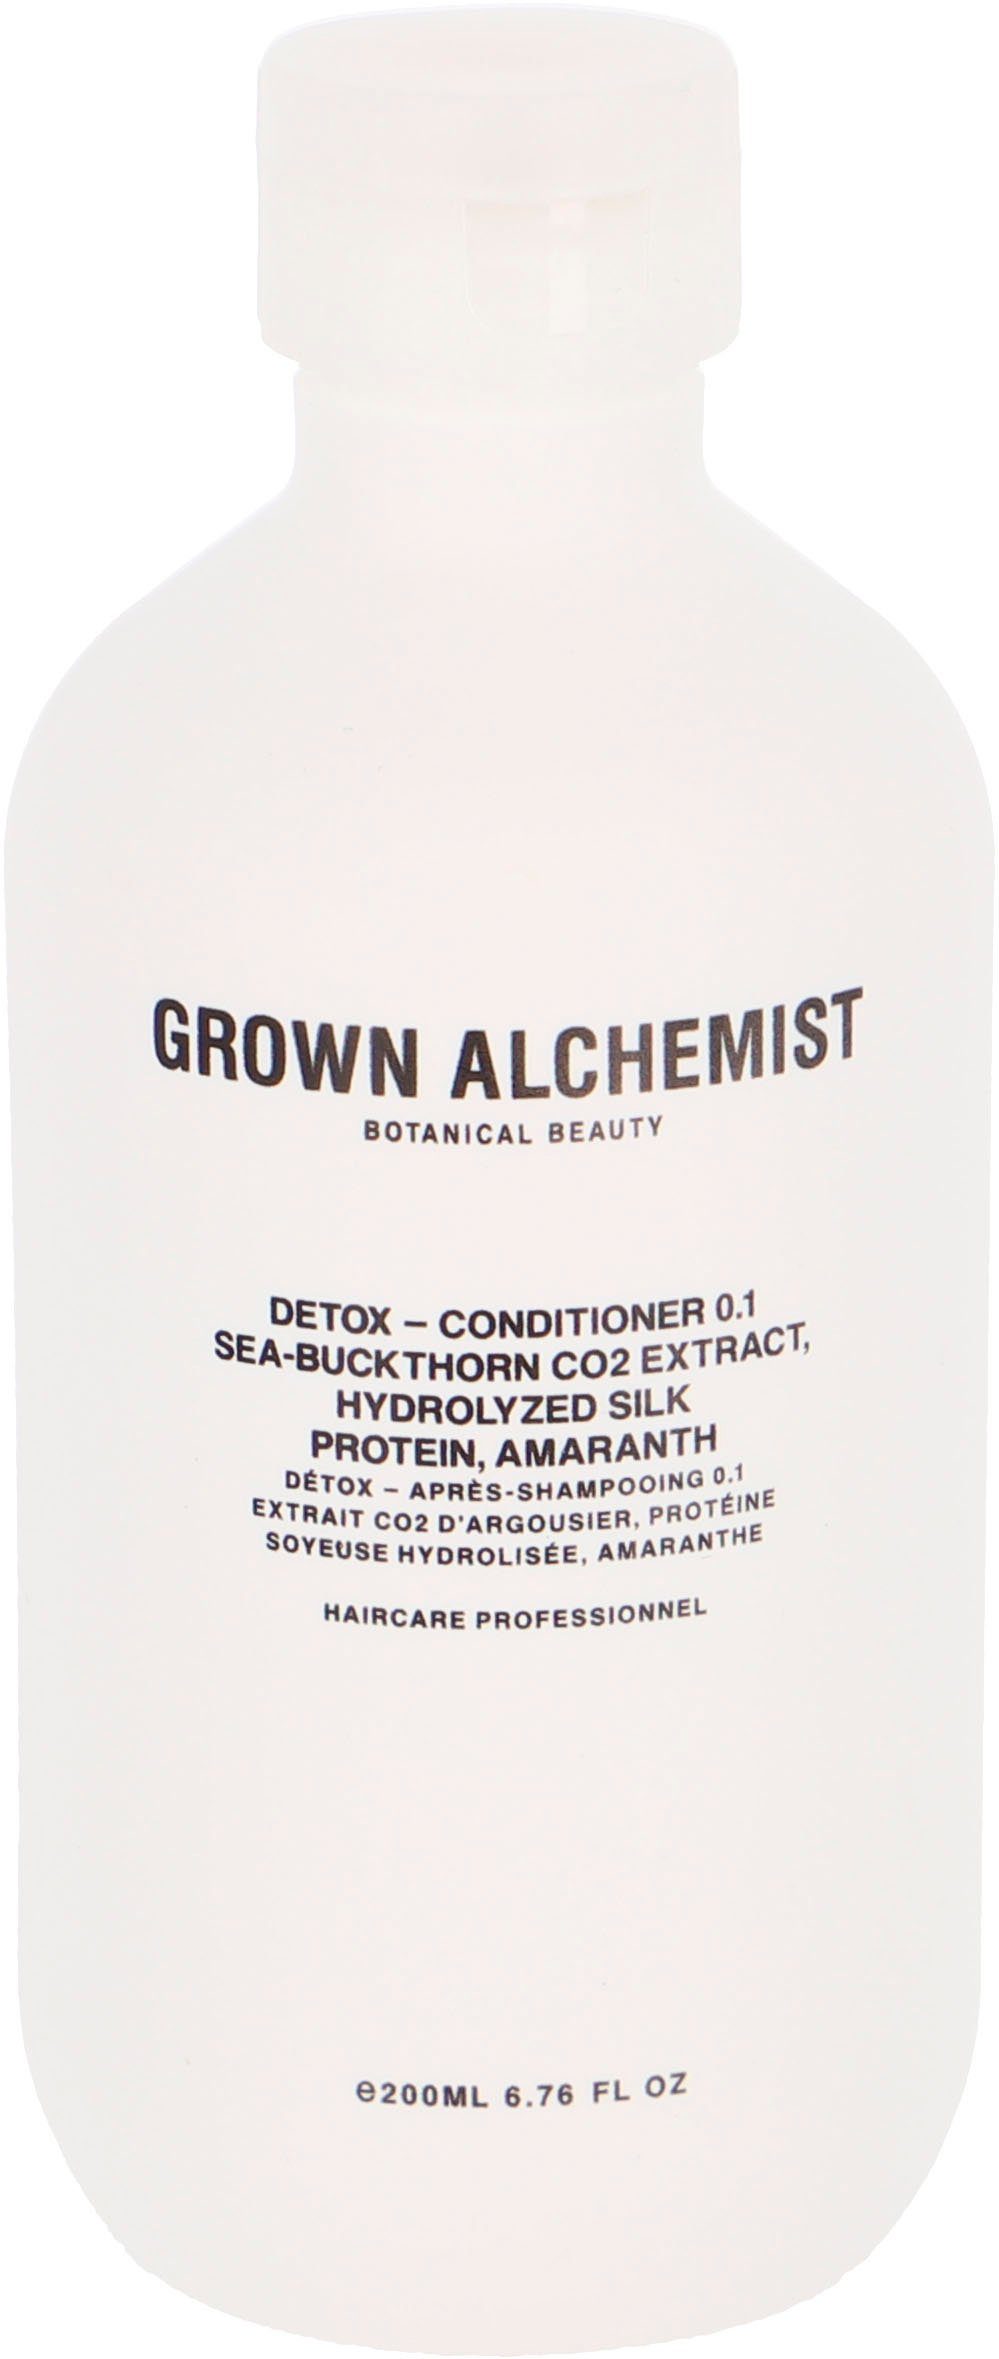 GROWN ALCHEMIST Haarspülung Detox - CO2 Conditioner 500 Sea-Buckthorn Extract, Amaranth 0.1, Protein, Silk Hydrolyzed ml